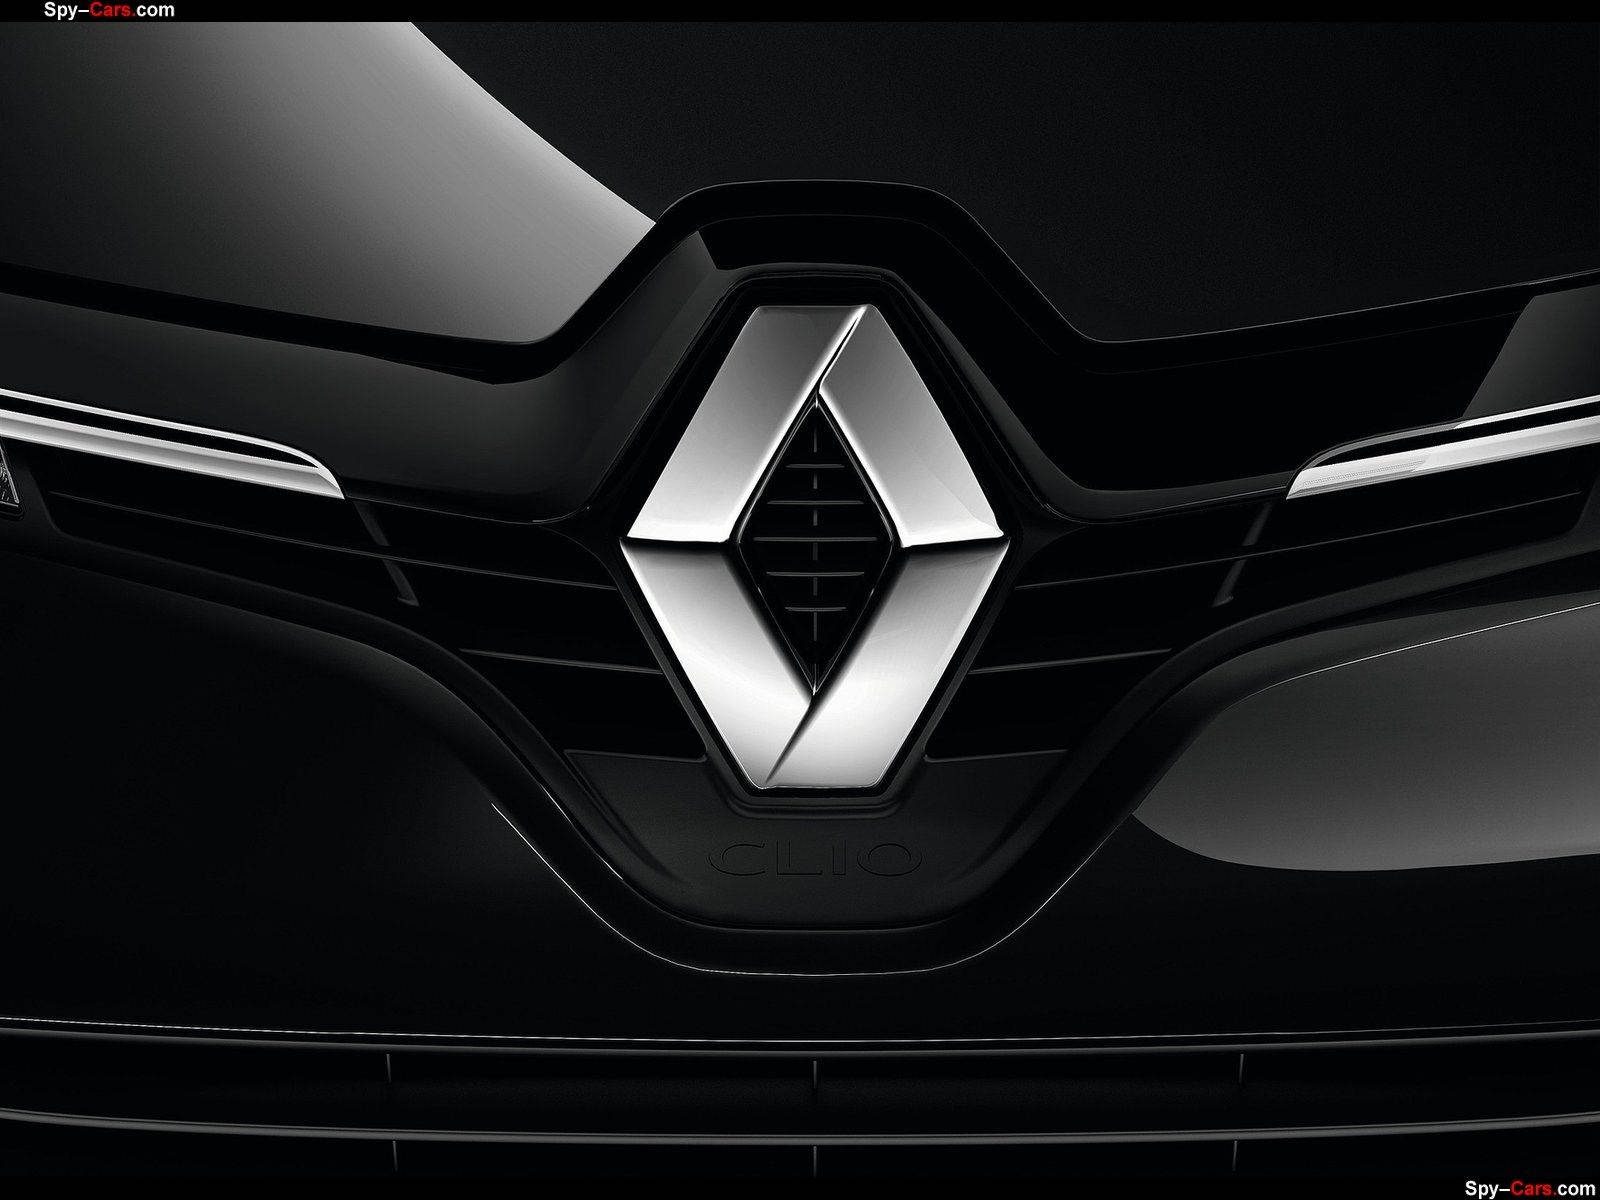 Renault Car Logo